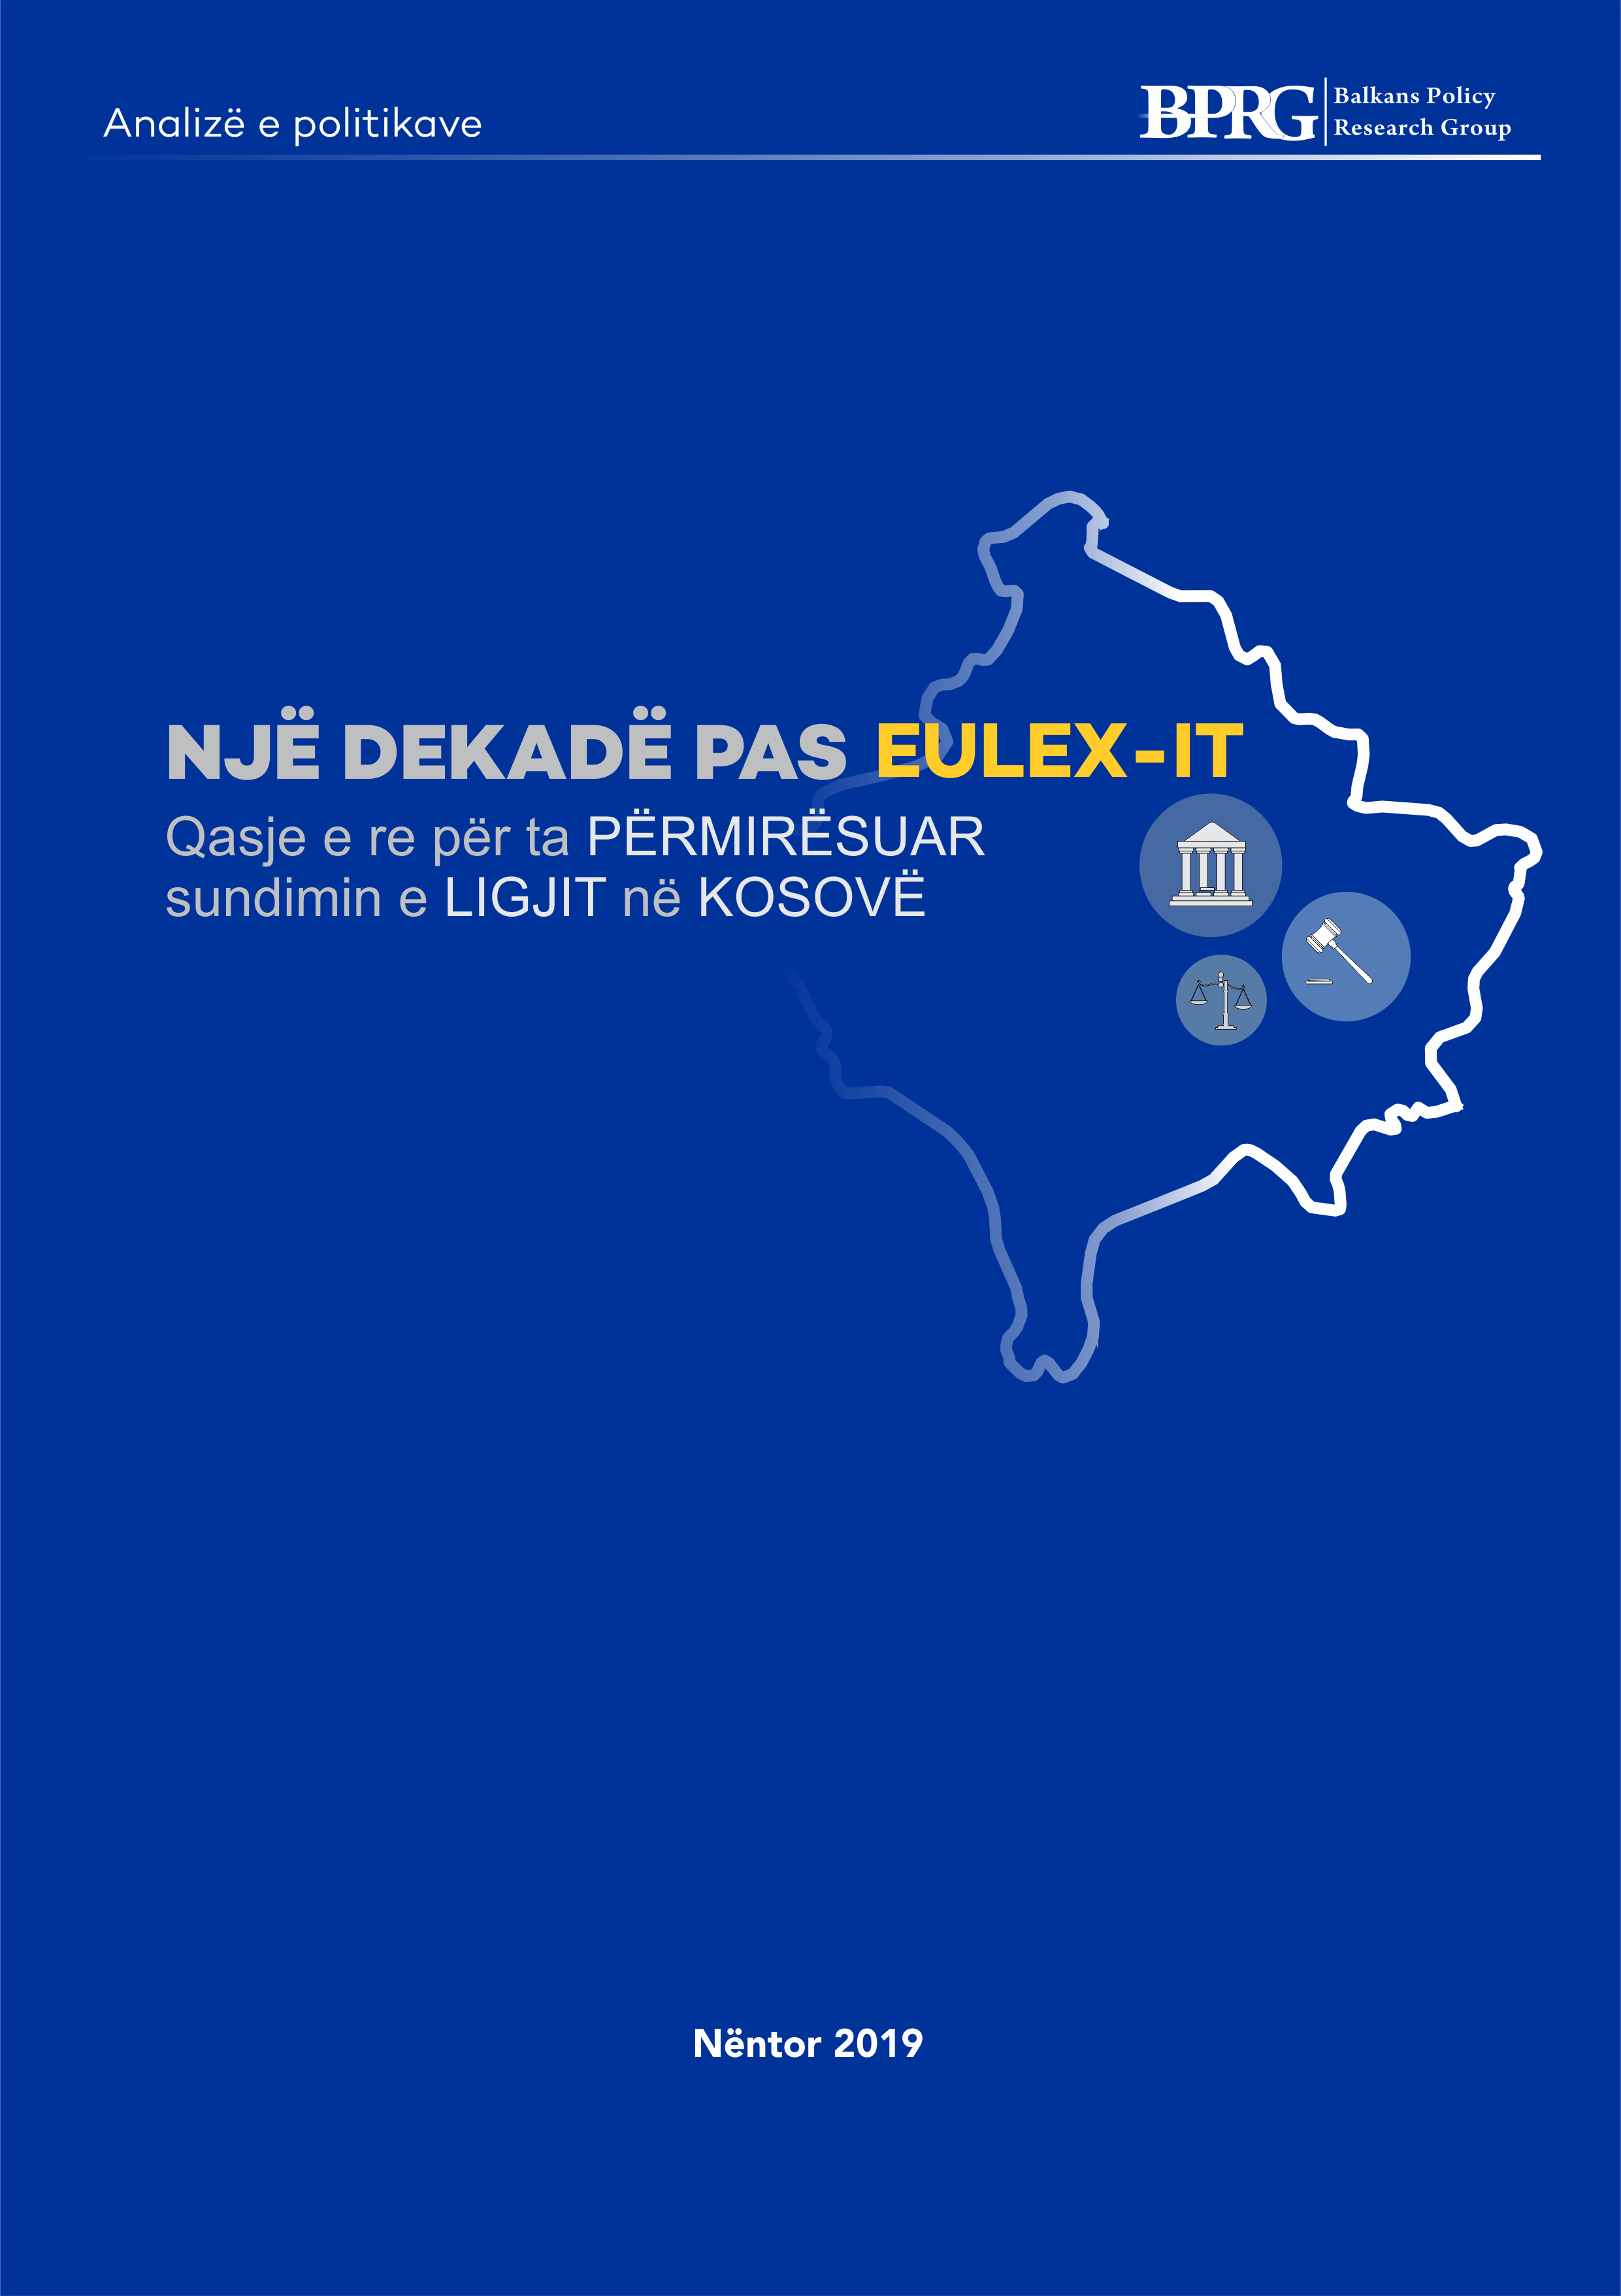 Një Dekadë pas EULEX-it: Qasje e re për ta Përmirësuar Sundimin e Ligjit në Kosovë